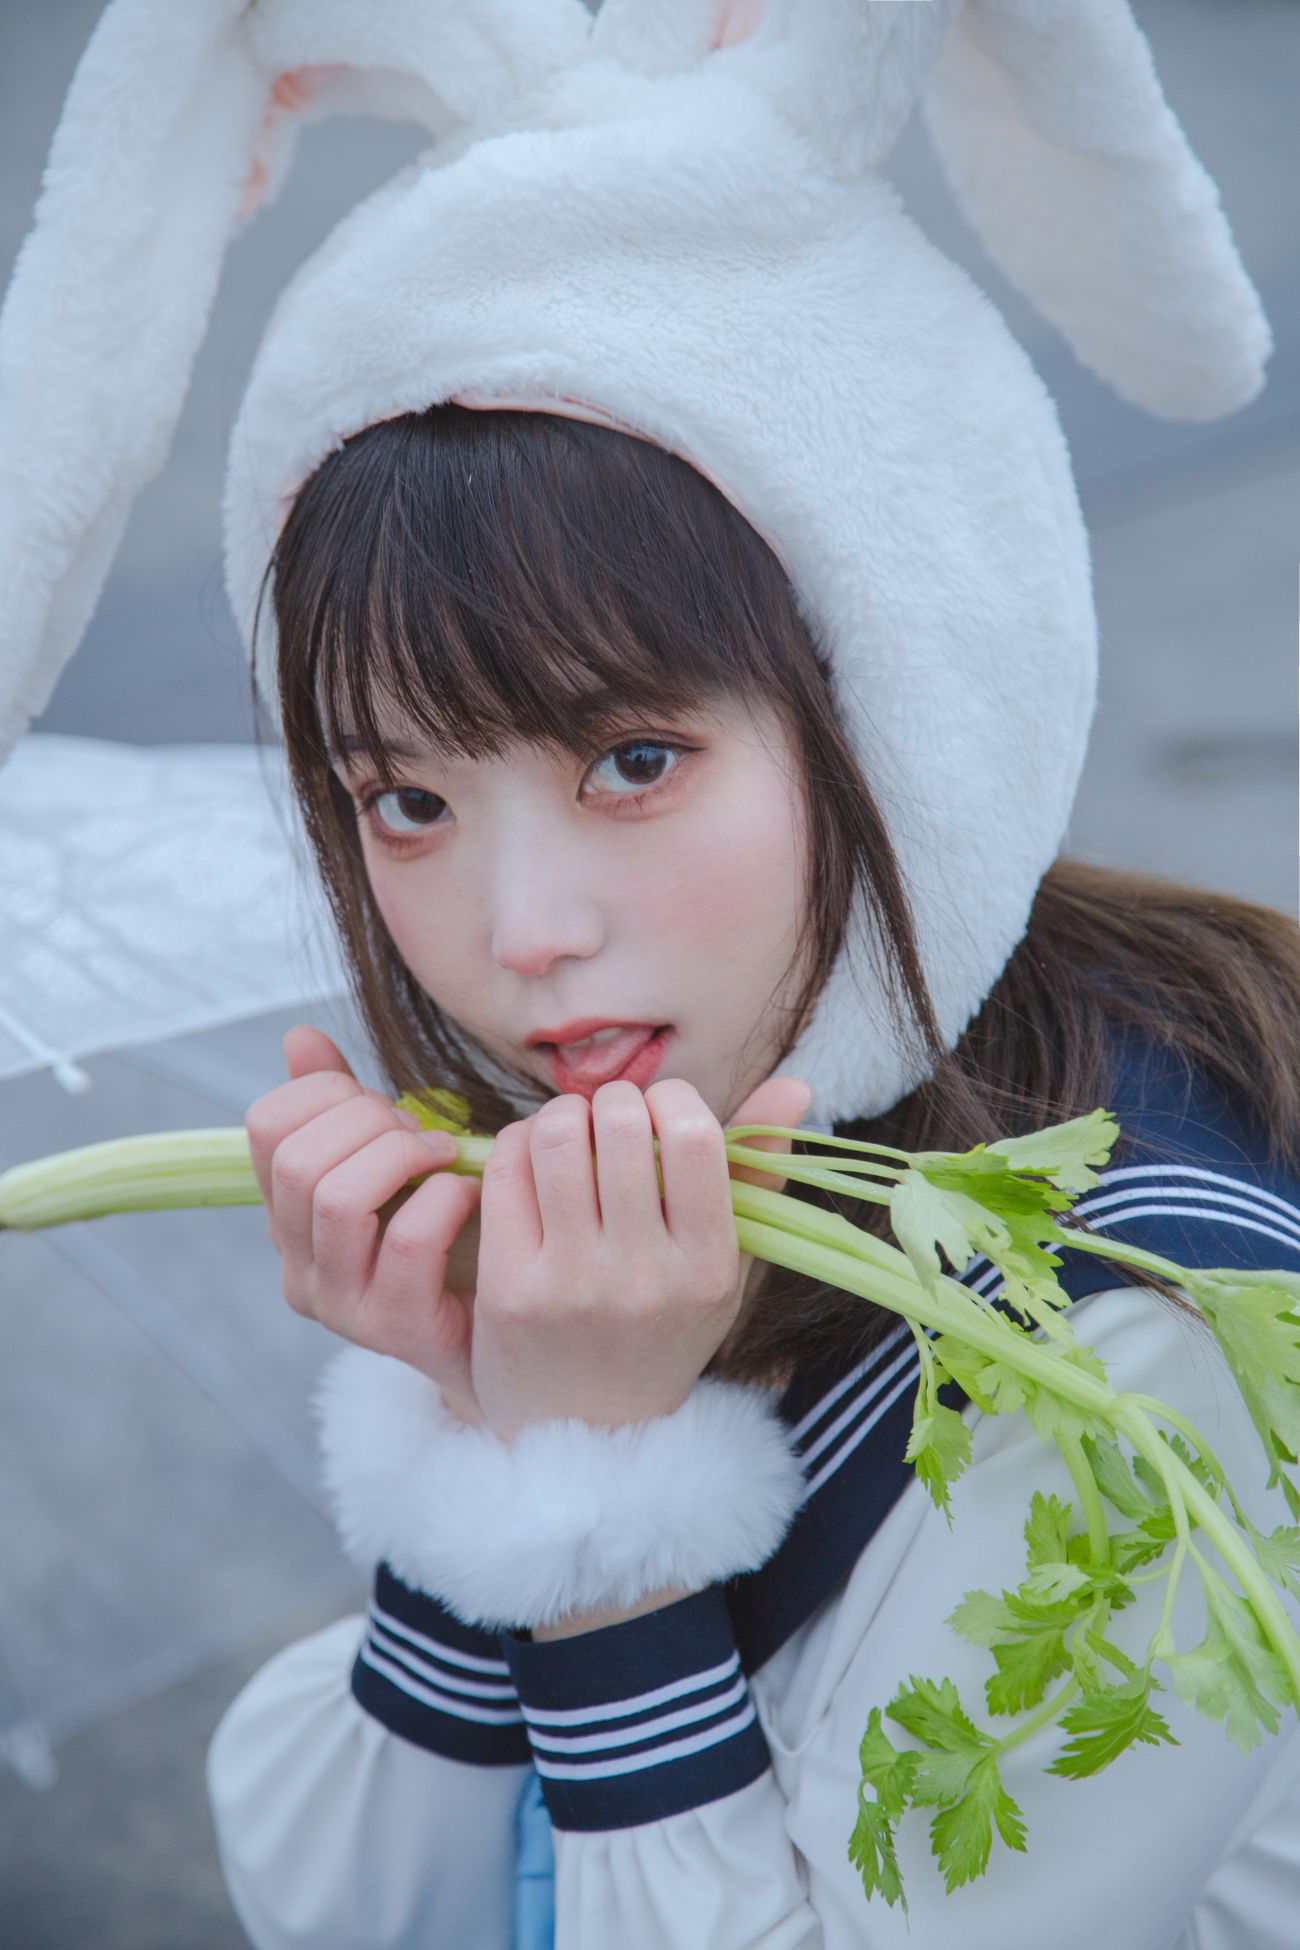 微博美少女Fushii海堂Cosplay性感写真兔兔头 (22)